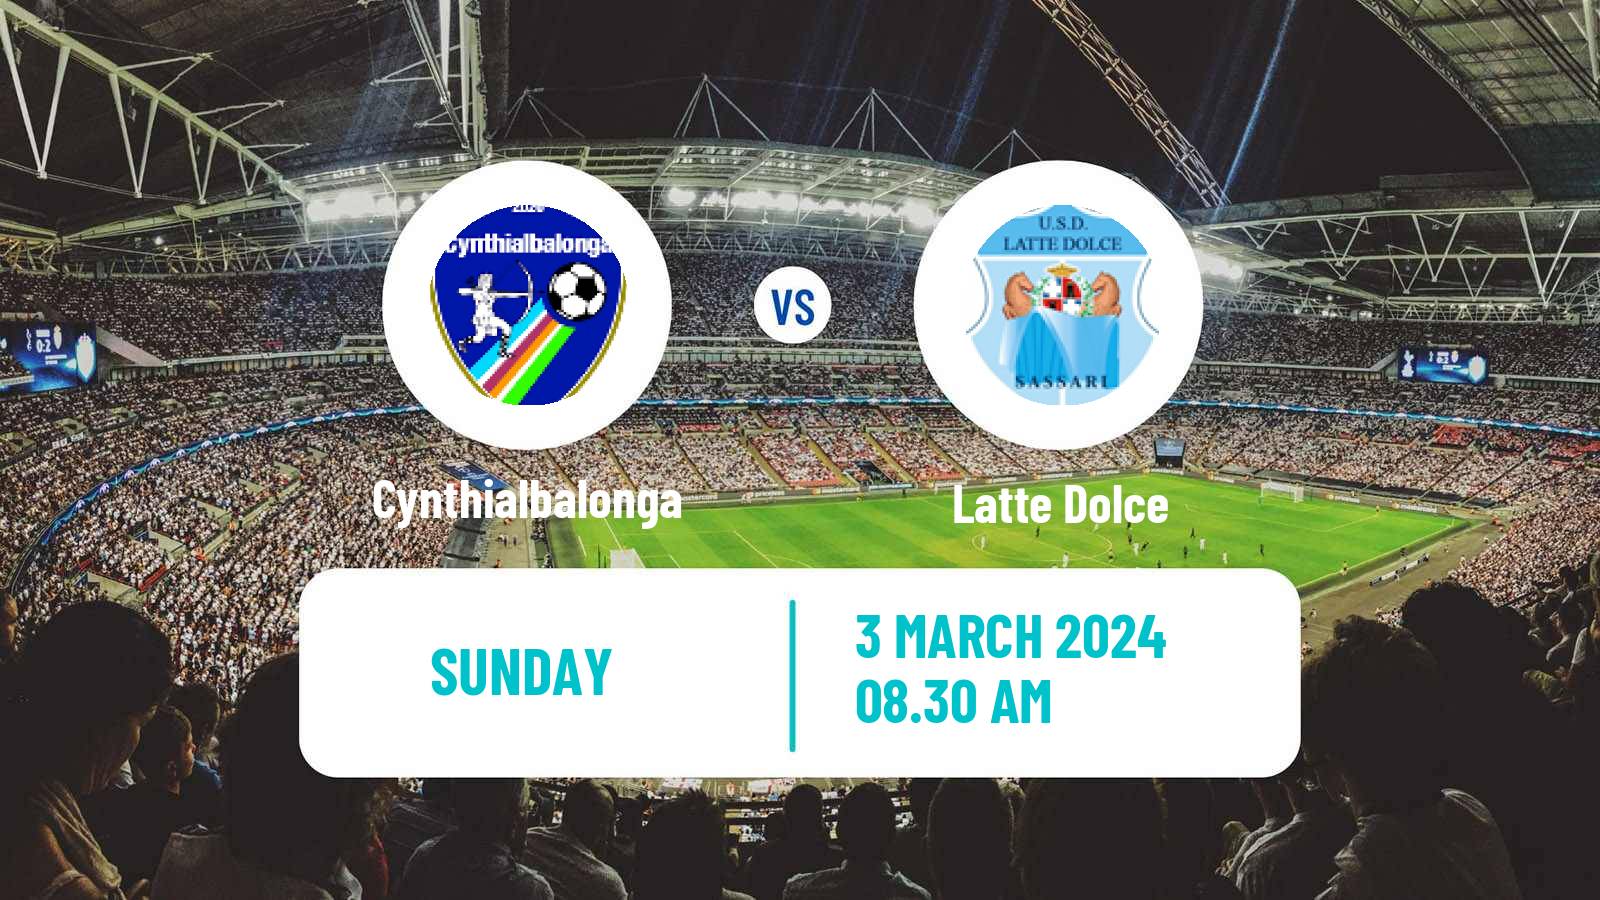 Soccer Italian Serie D - Group G Cynthialbalonga - Latte Dolce